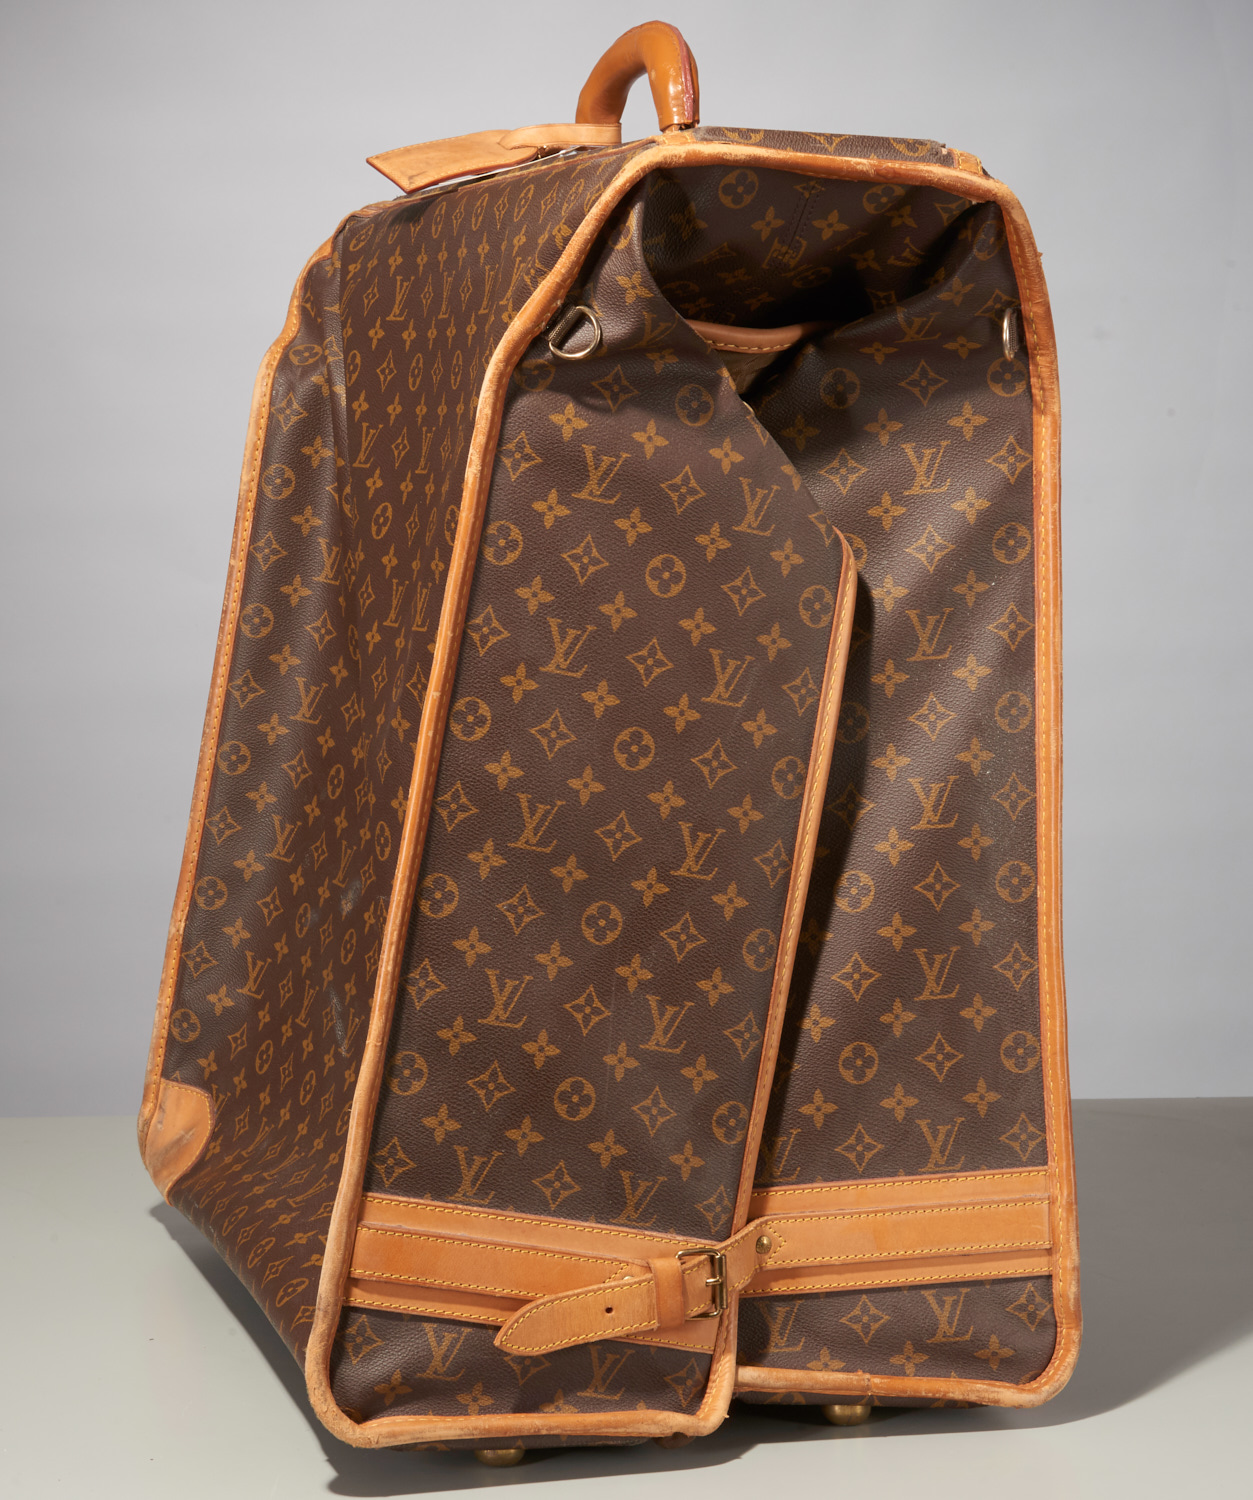 Sold at Auction: 1970's Vintage Louis Vuitton Garment Bag